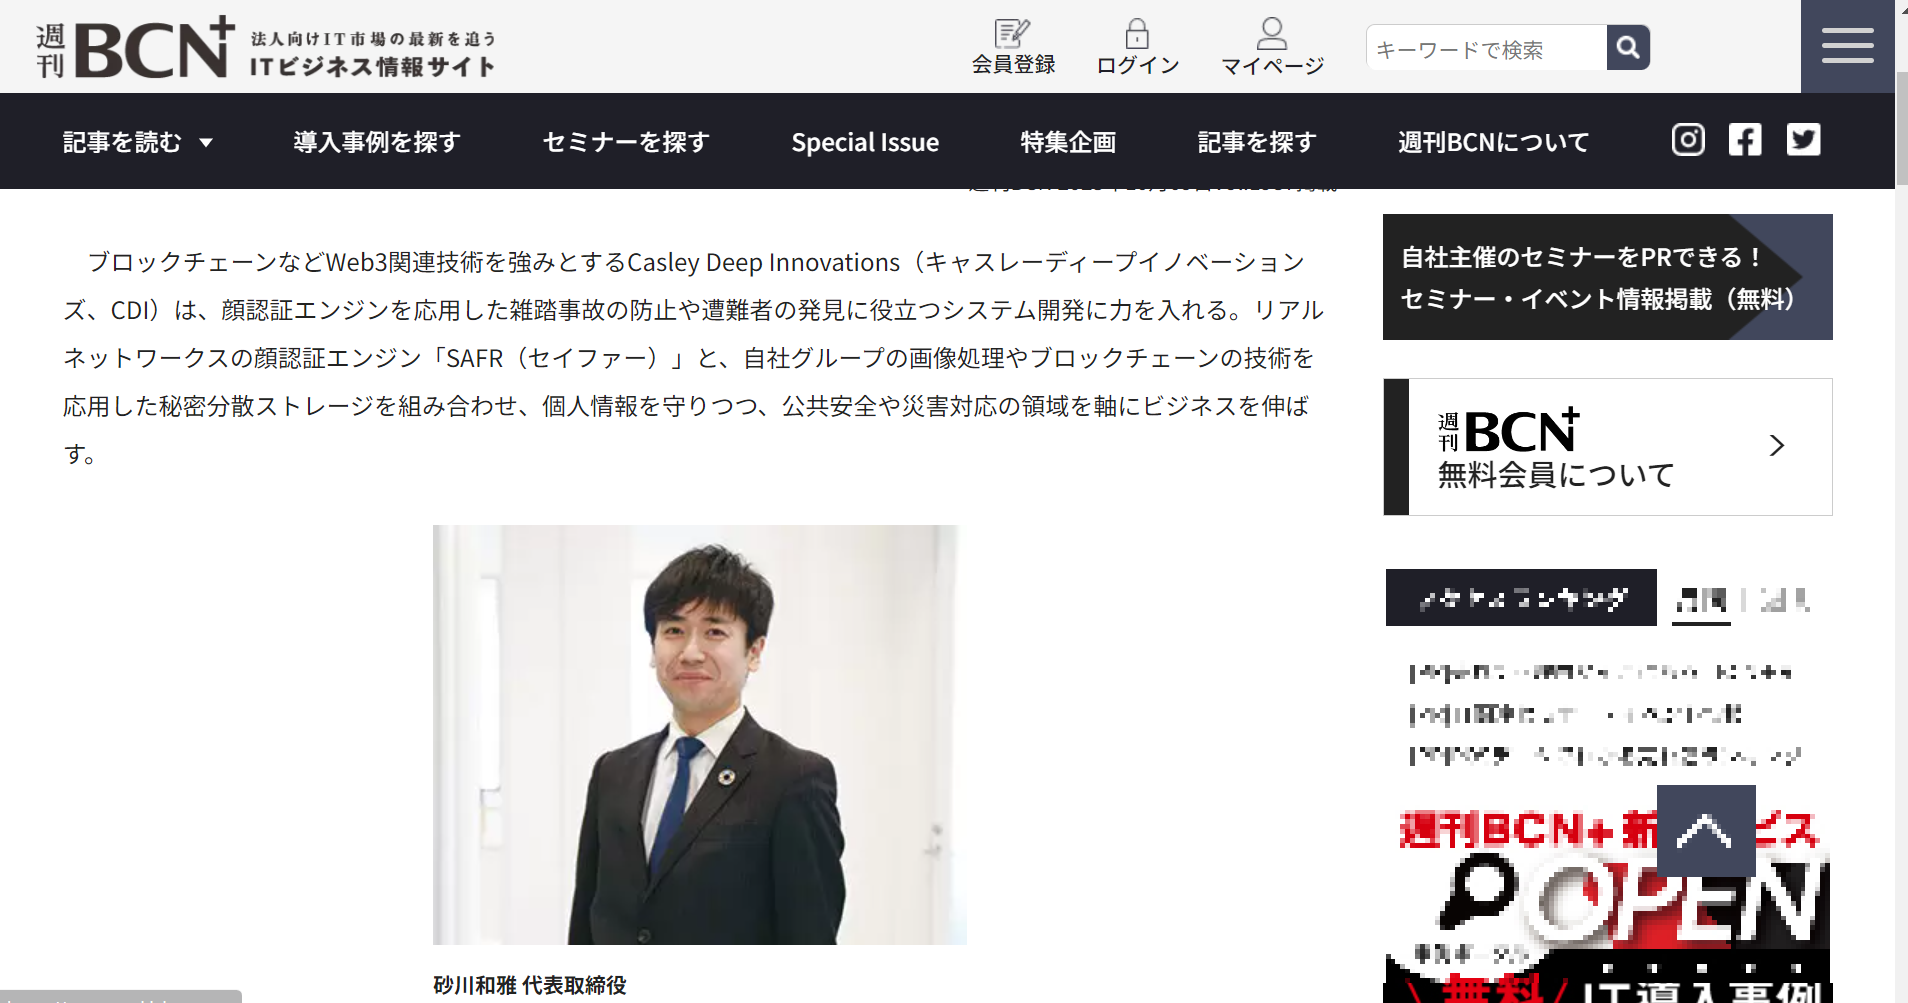 furehako活用実績が週刊「BCN」に掲載されました